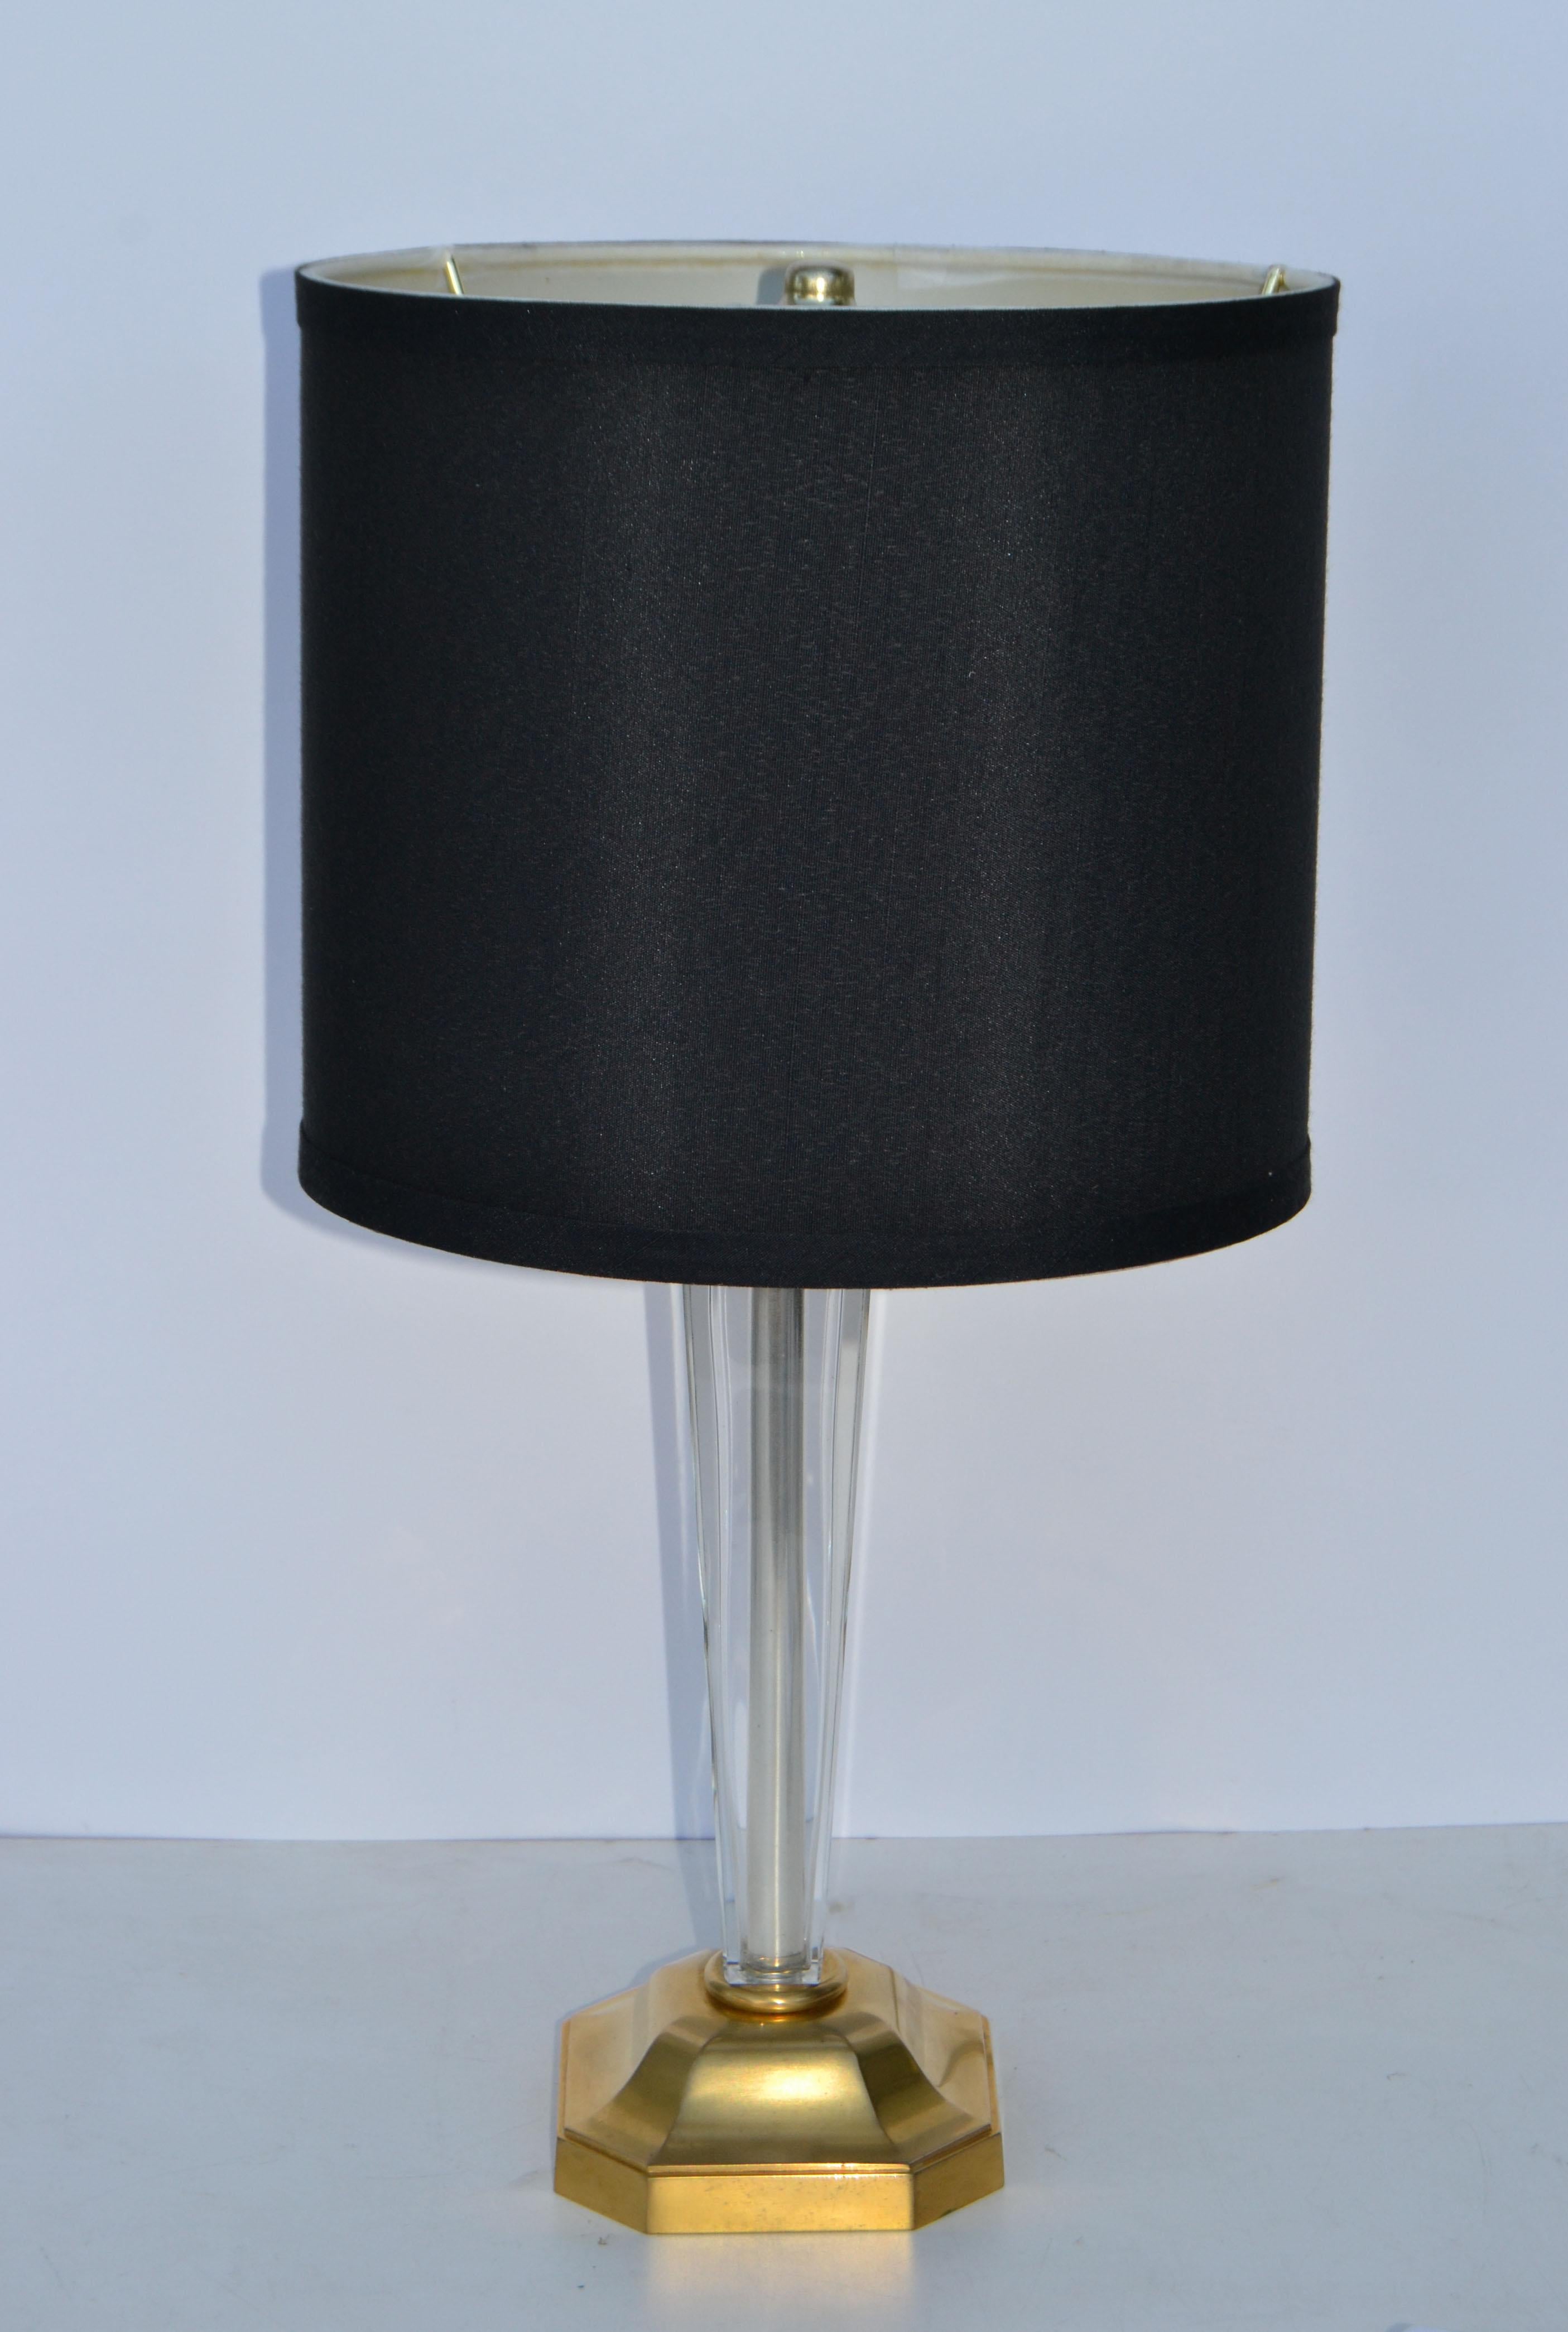 Lampe de table en verre et laiton avec harpe à pince et abat-jour en tissu noir néoclassique par Maison Charles, France 1950. 
US Rewiring, la lampe prend 1 petite ampoule candélabre avec max 60 watts.
L'abat-jour tambour mesure : Diamètre : 9